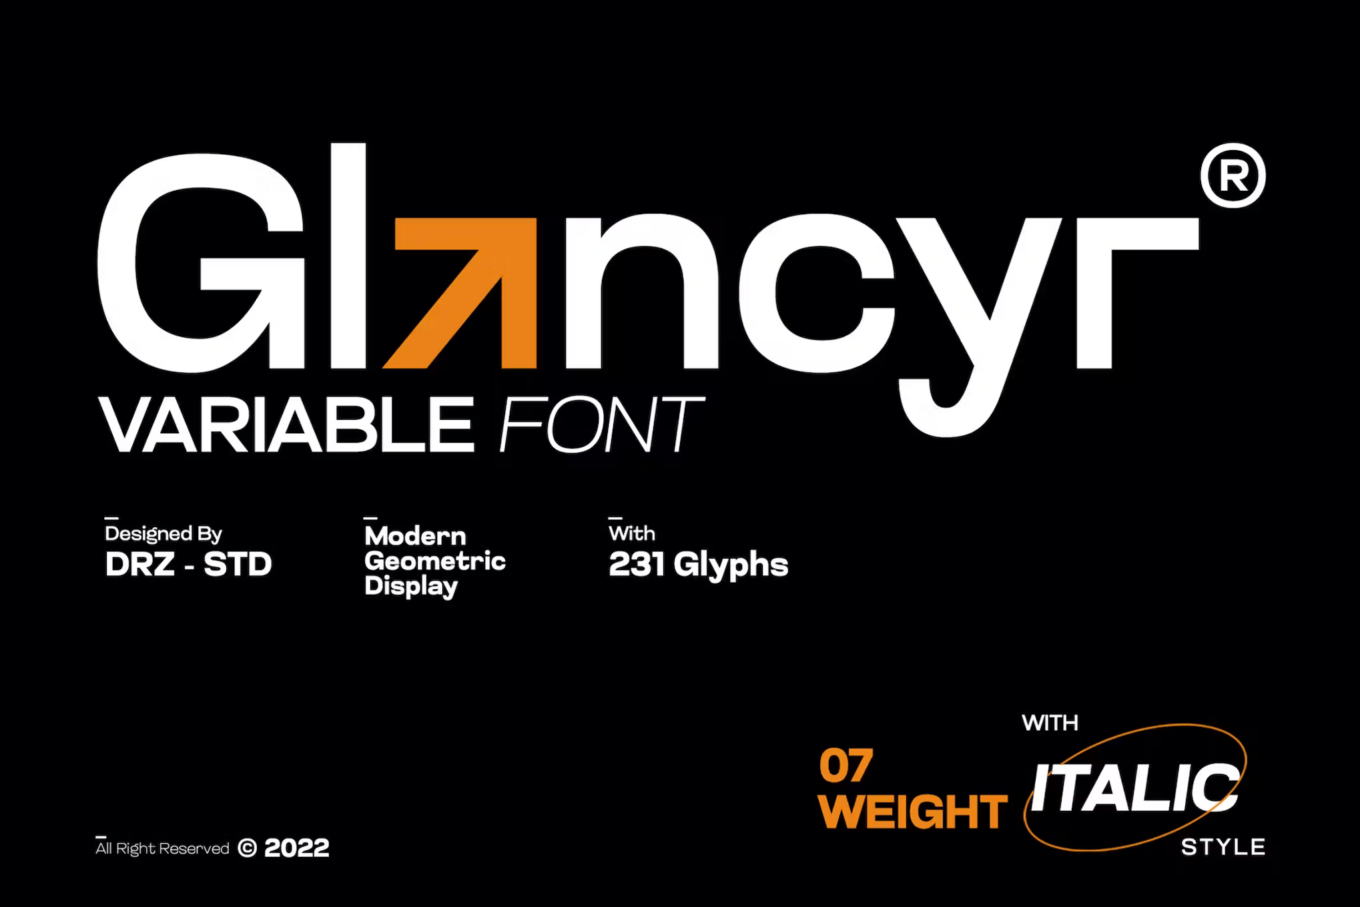 Glancyr - Modern Geometric Font by drizy